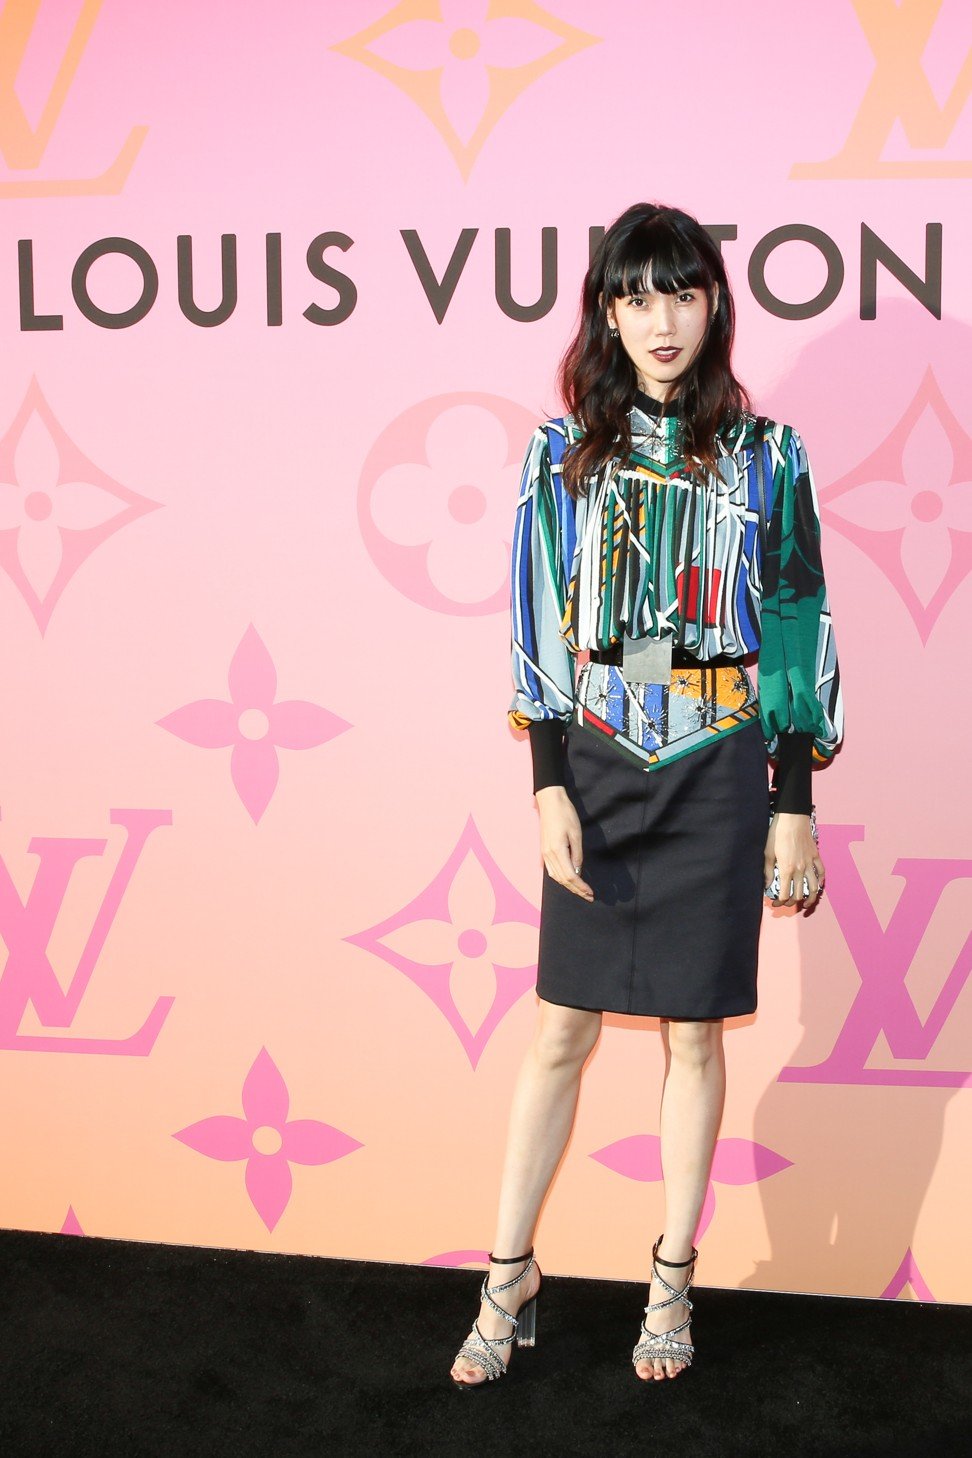 Louis Vuitton dresses the League of Legends